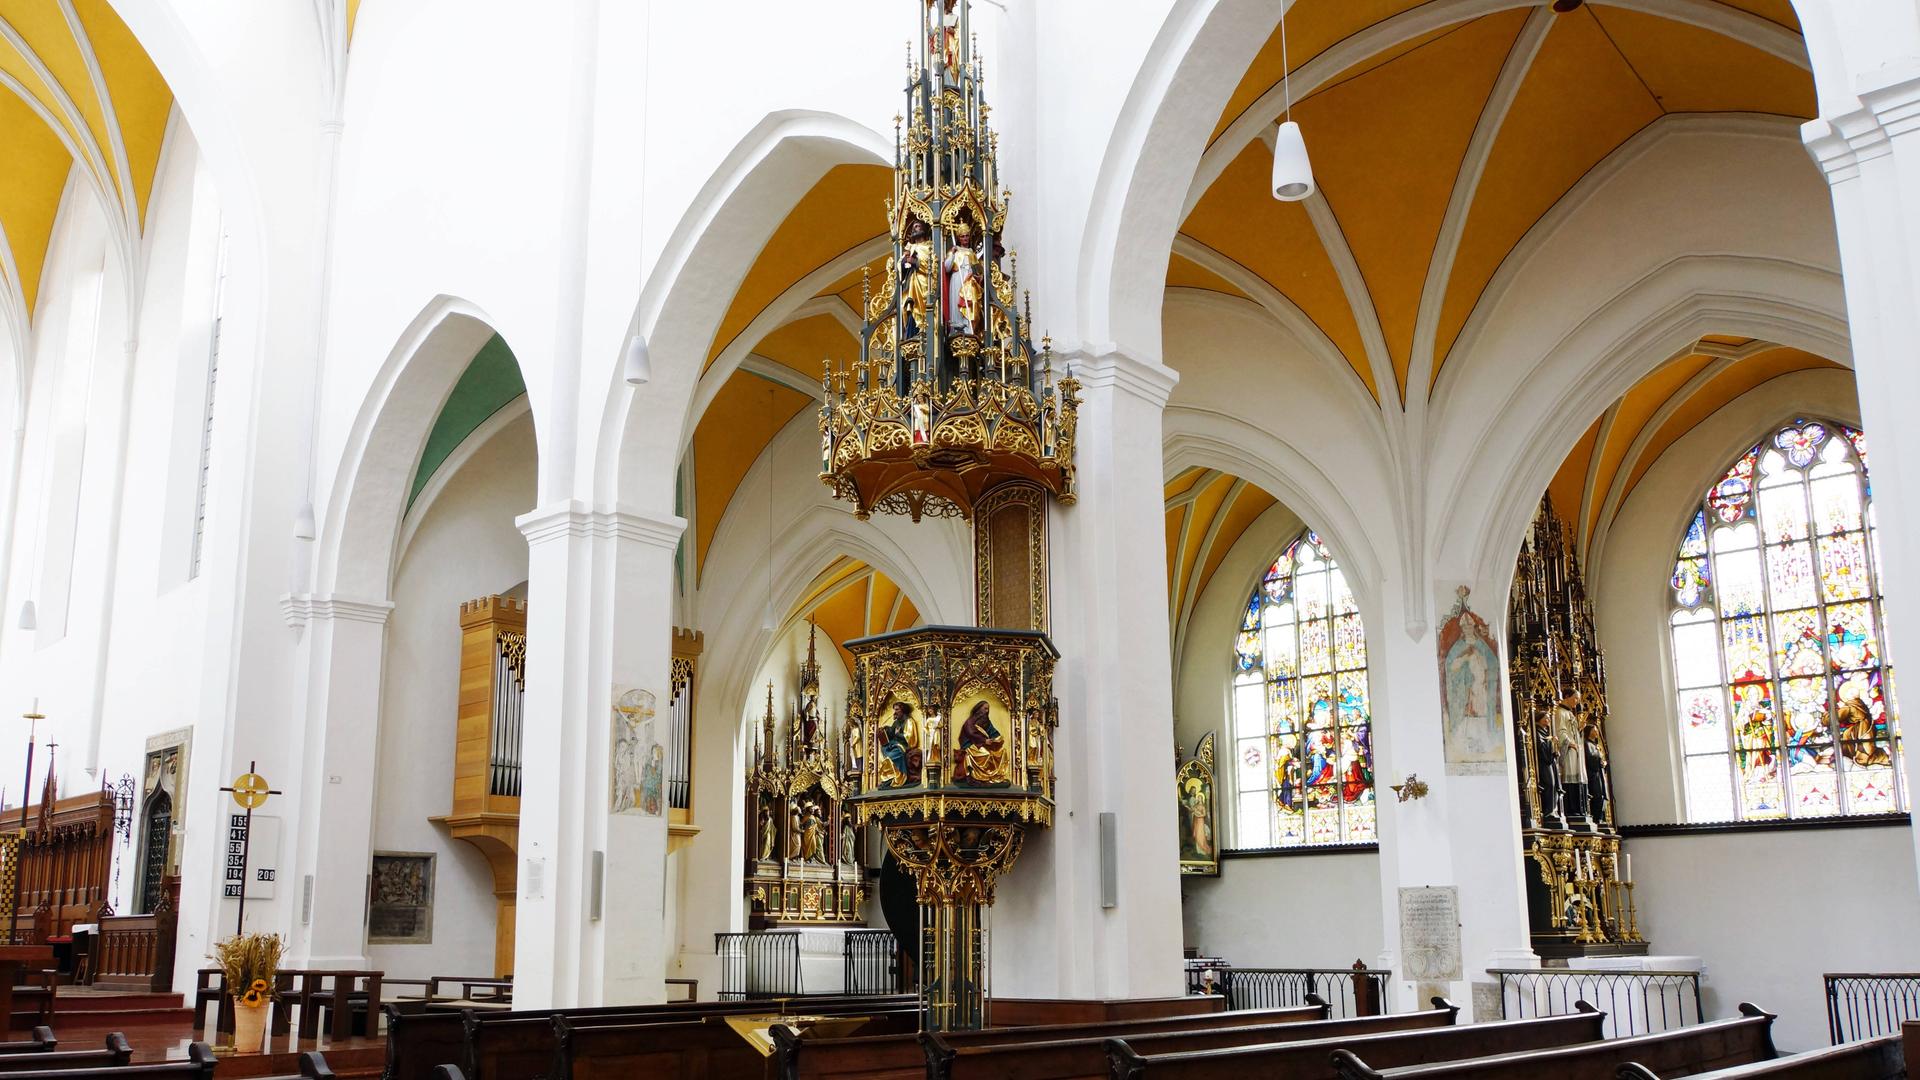 Kunstvolle Kanzel in der Kirche Sankt Jodok in Landshut (Bayern)